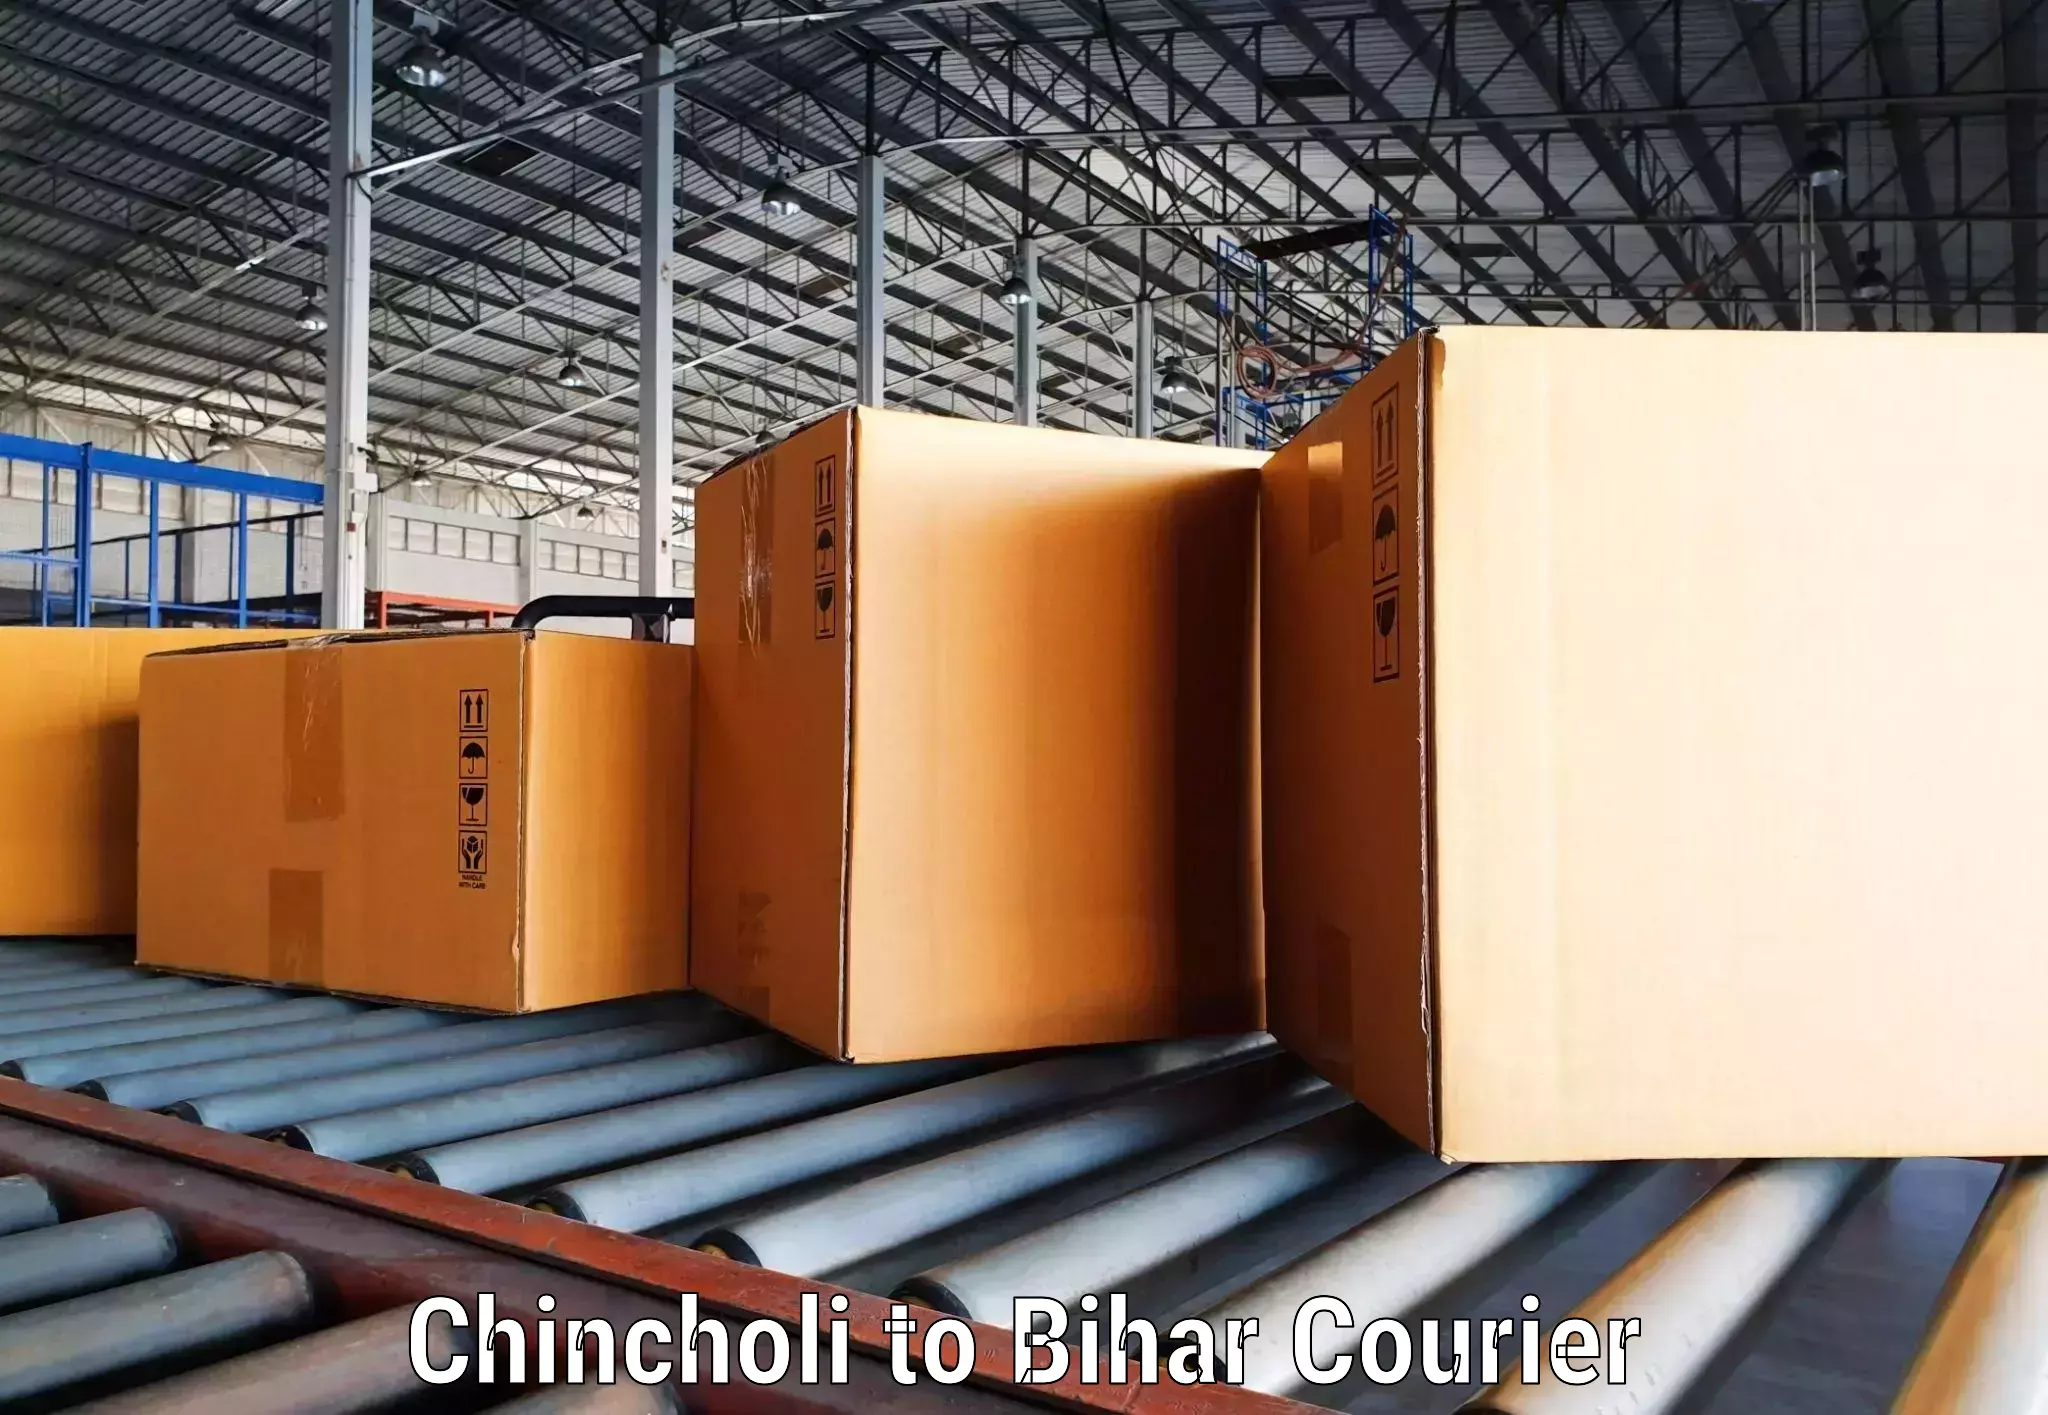 Courier service comparison Chincholi to Barh